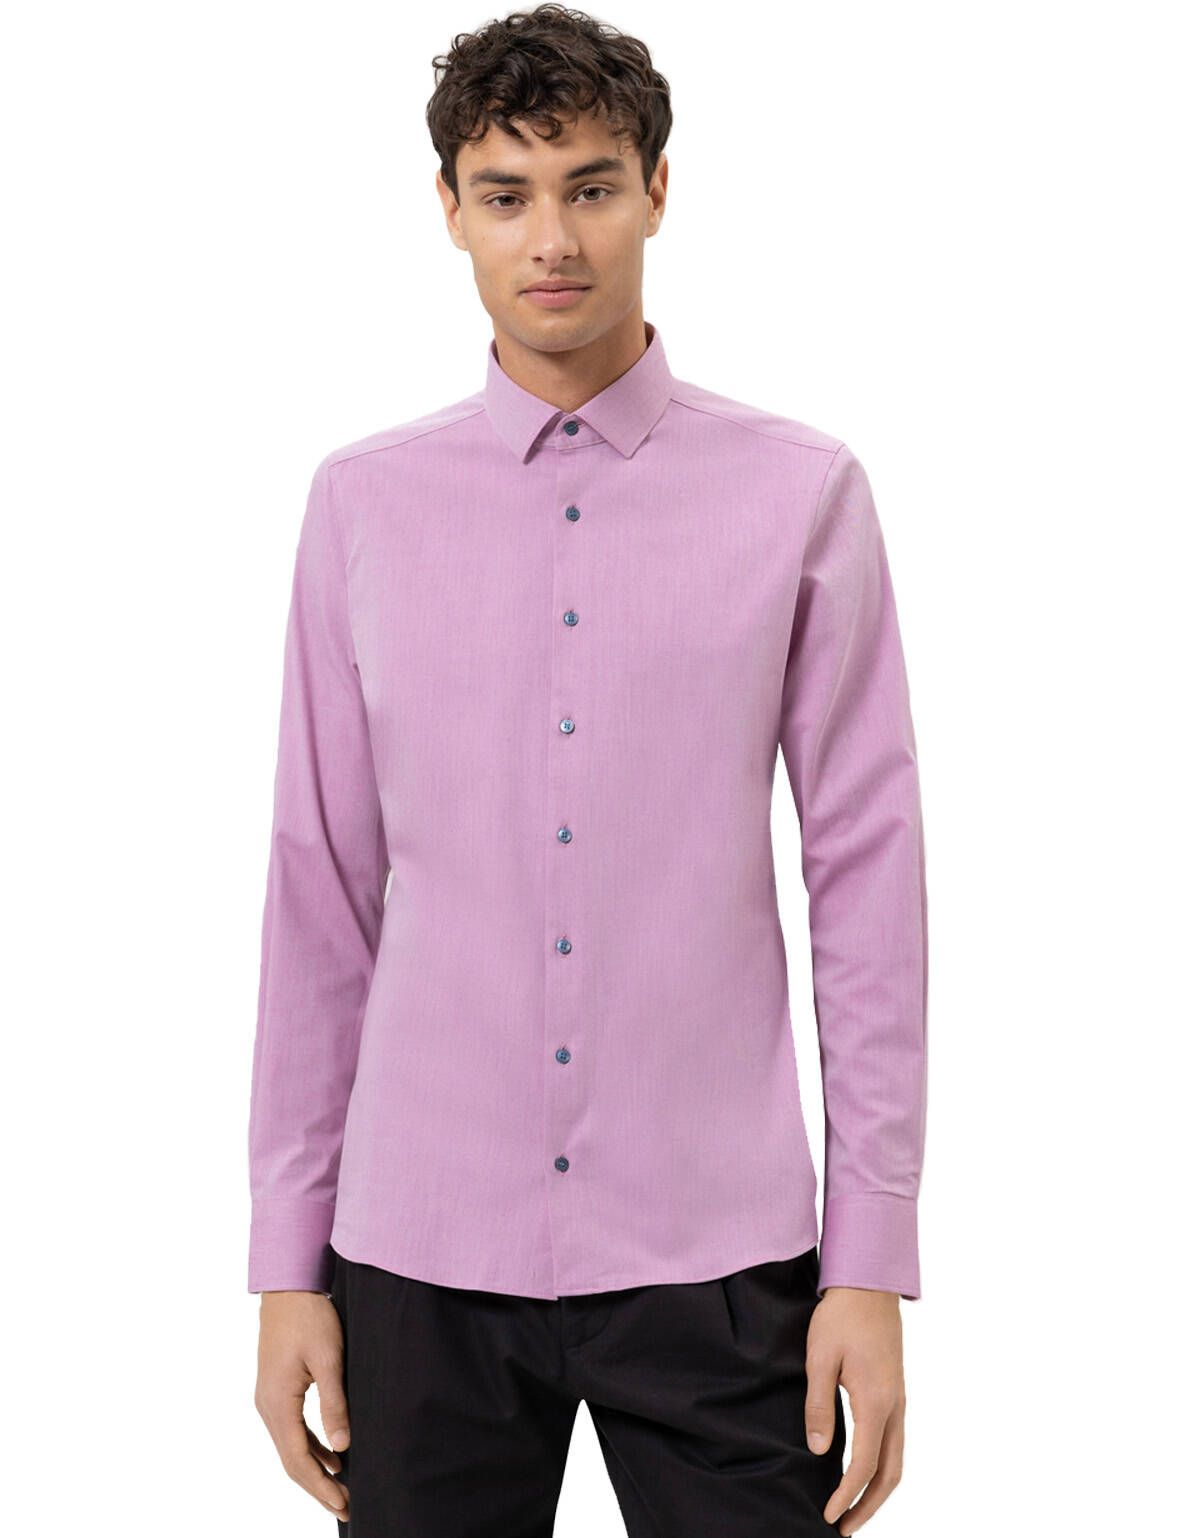 Рубашка мужская розовая OLYMP 24/7, body fit[Розовый]